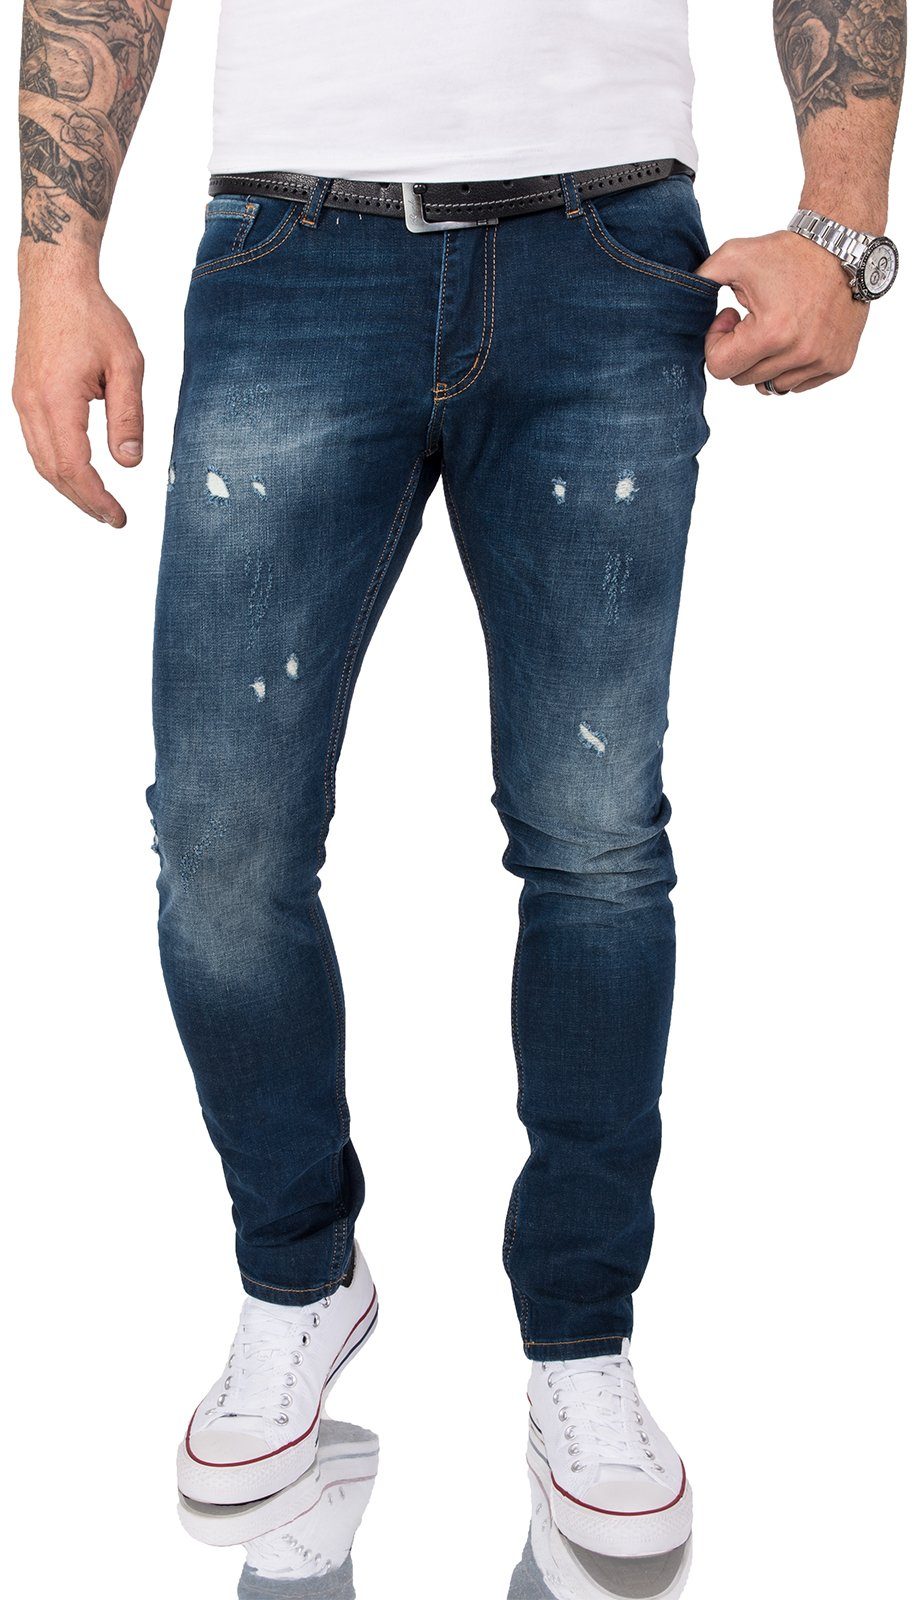 Gelverie Slim-fit-Jeans Herren Jeans Stonewashed Dunkelblau G-202